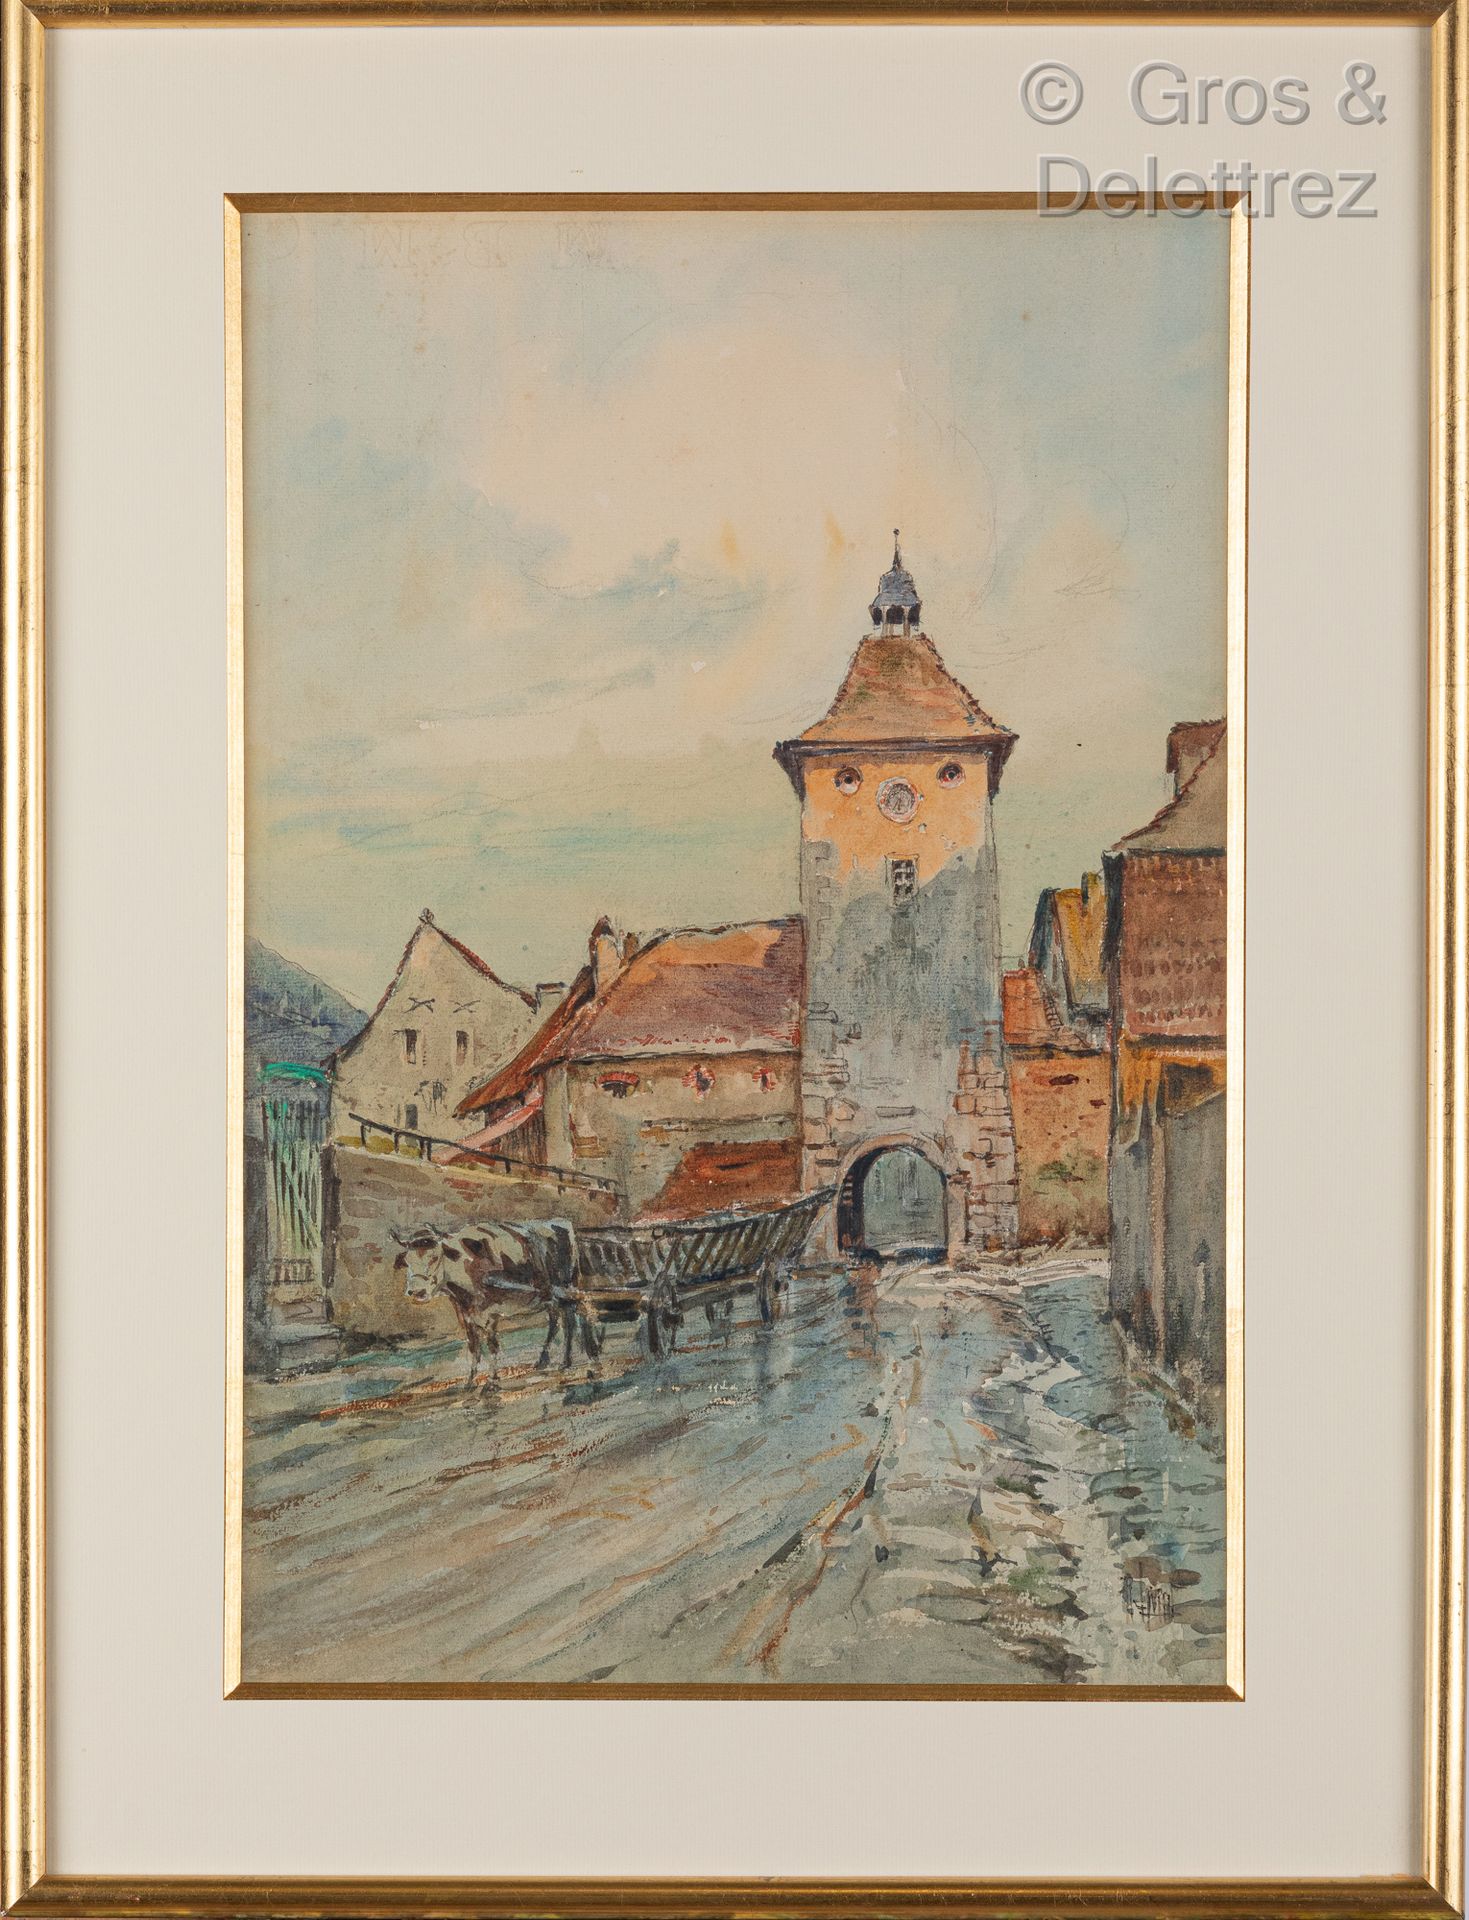 Null 勒内-莱维德 (1872-1938)

村庄前的牛车

纸上水彩和铅笔，右下方签名

46 x 30厘米